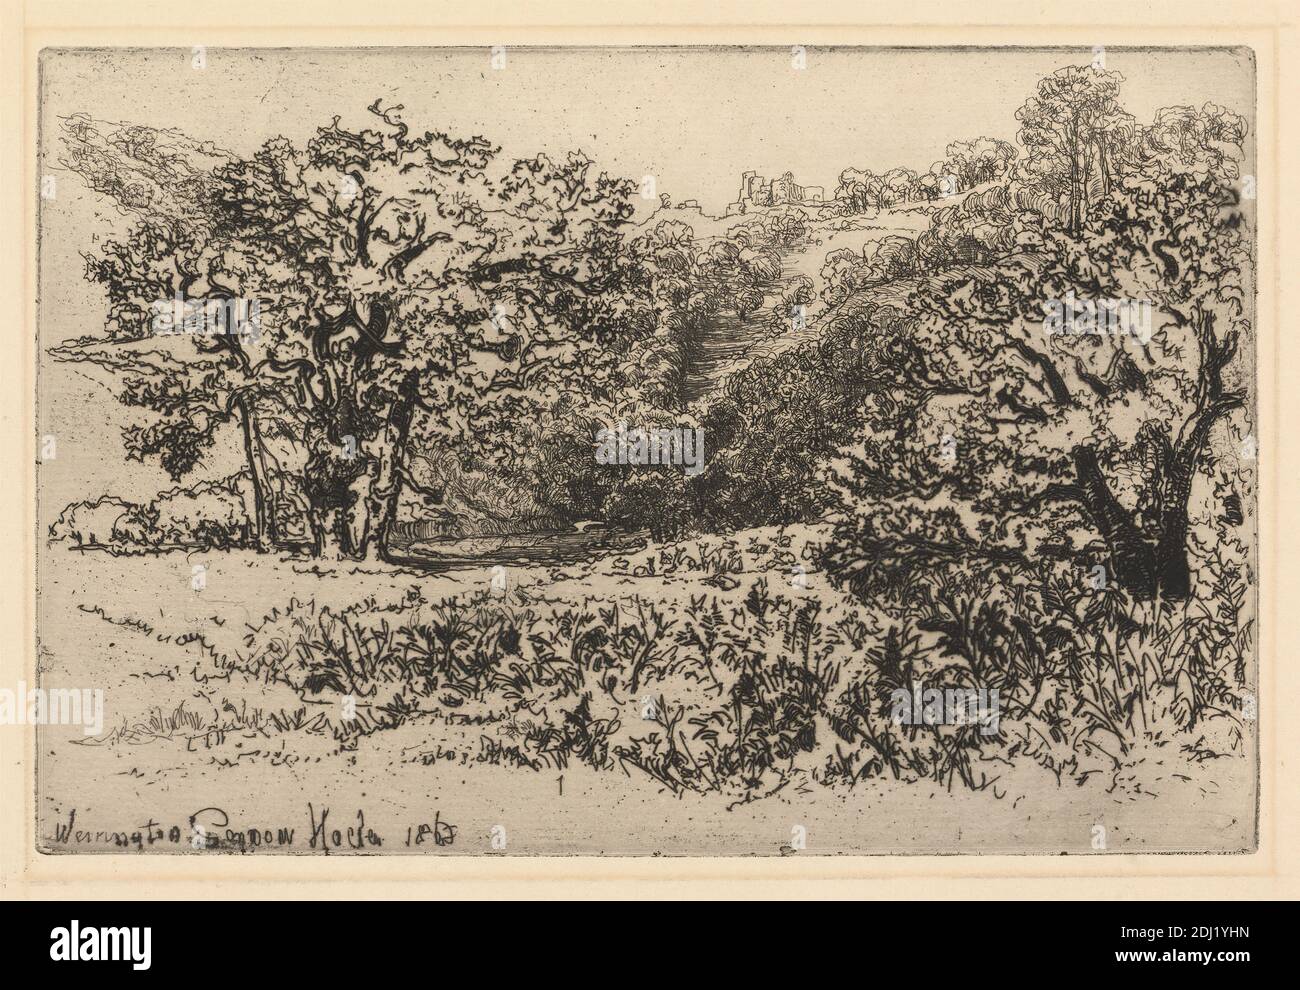 Werrington, Francis Seymour Haden, 1818–1910, British, 1868, Ätzung und Trockenpunkt, mit Tellenton auf Medium, leicht strukturiert, beigefarbenes Papier, Blatt: 9 13/16 x 14 5/16 Zoll (25 x 36.4 cm), Platte: 5 1/2 x 8 5/16 Zoll (13.9 x 21.1 cm), und Bild: 5 1/2 x 8 5/16 Zoll (13.9 x 21.1 cm), architektonisches Motiv, Büsche, Burg, Vieh, Kühe, Abstand, Laub, Gras, Beweidung, Herde, Hügel, Landschaft, Fluss, Schafe, Bach, Bäume, England, Europa, Staffordshire, Vereinigtes Königreich Stockfoto